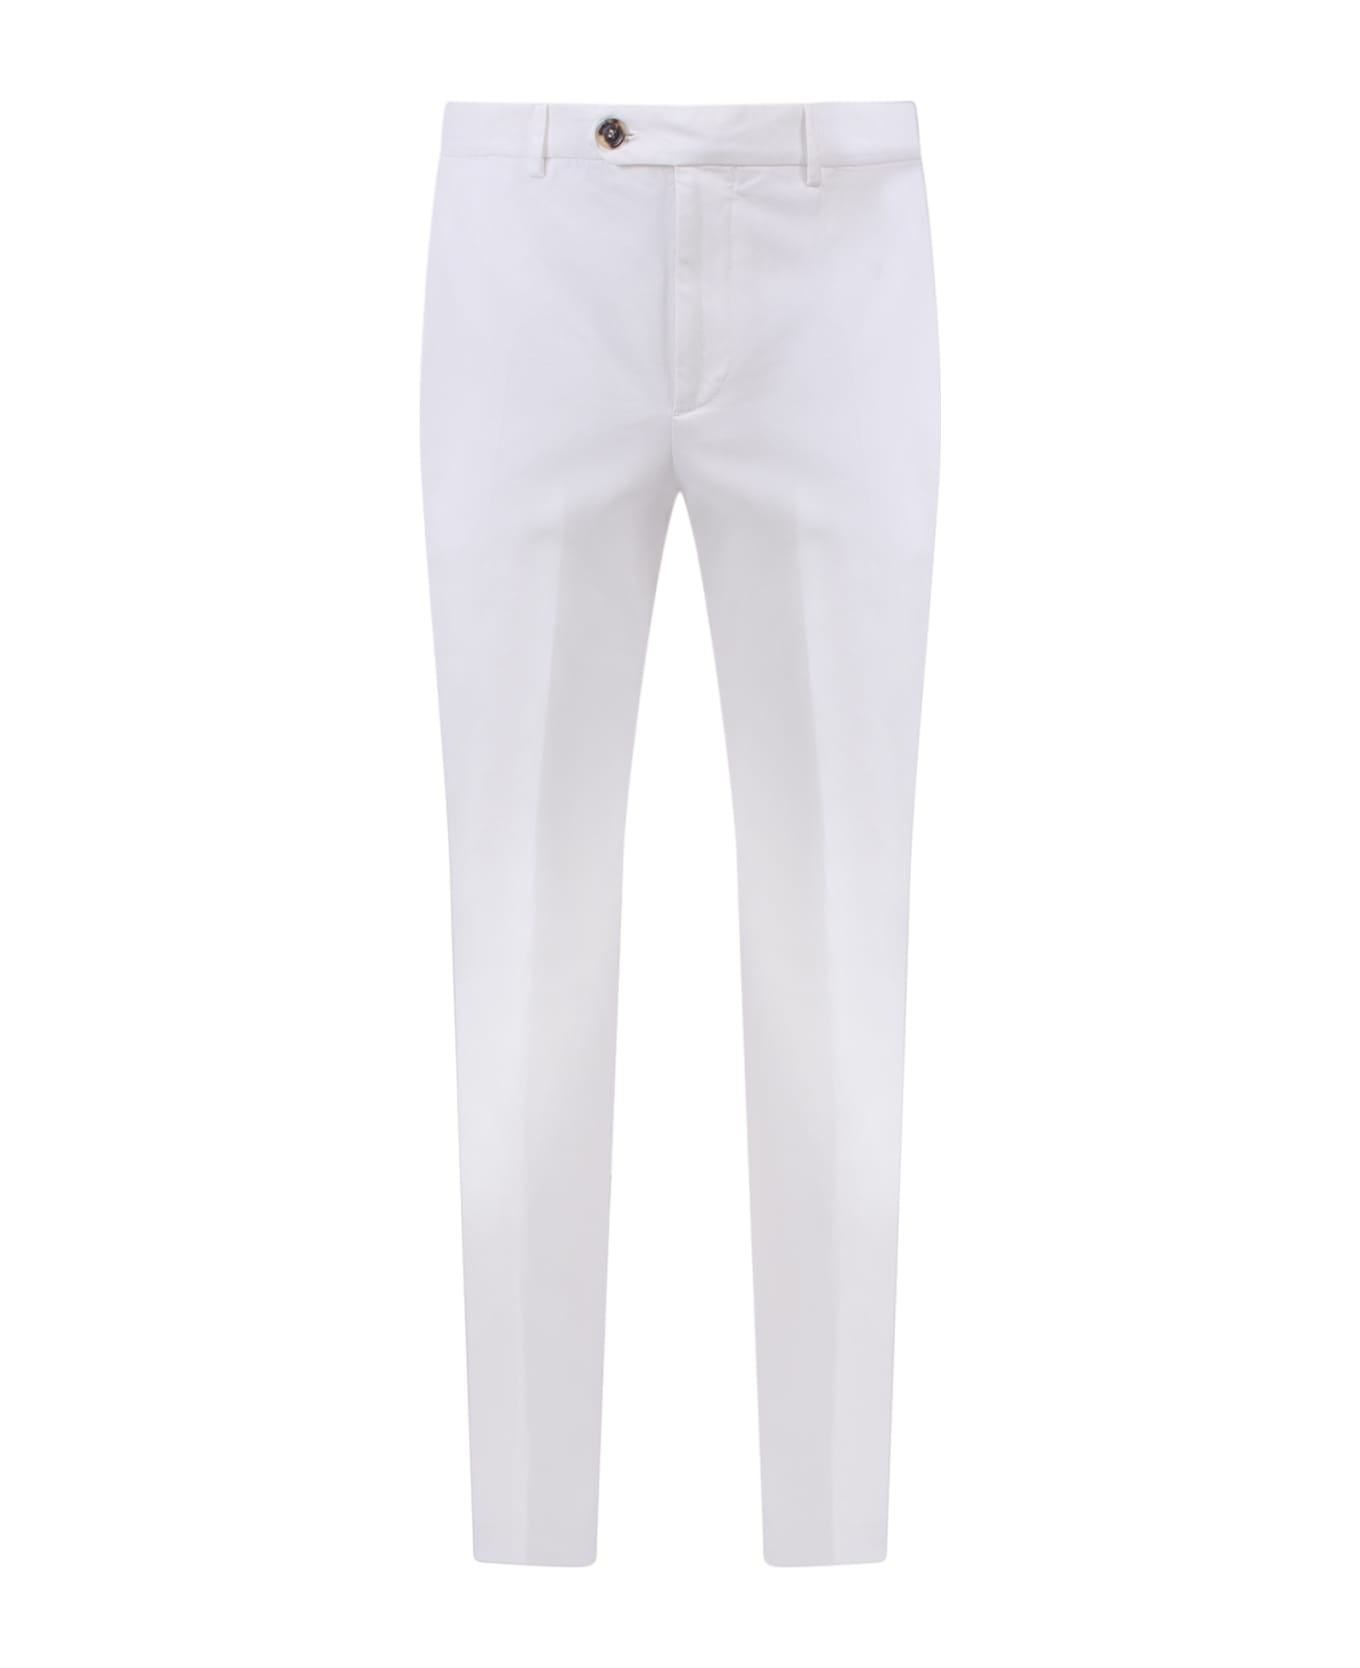 Brunello Cucinelli Italian Fit Cotton Trouser - White ボトムス